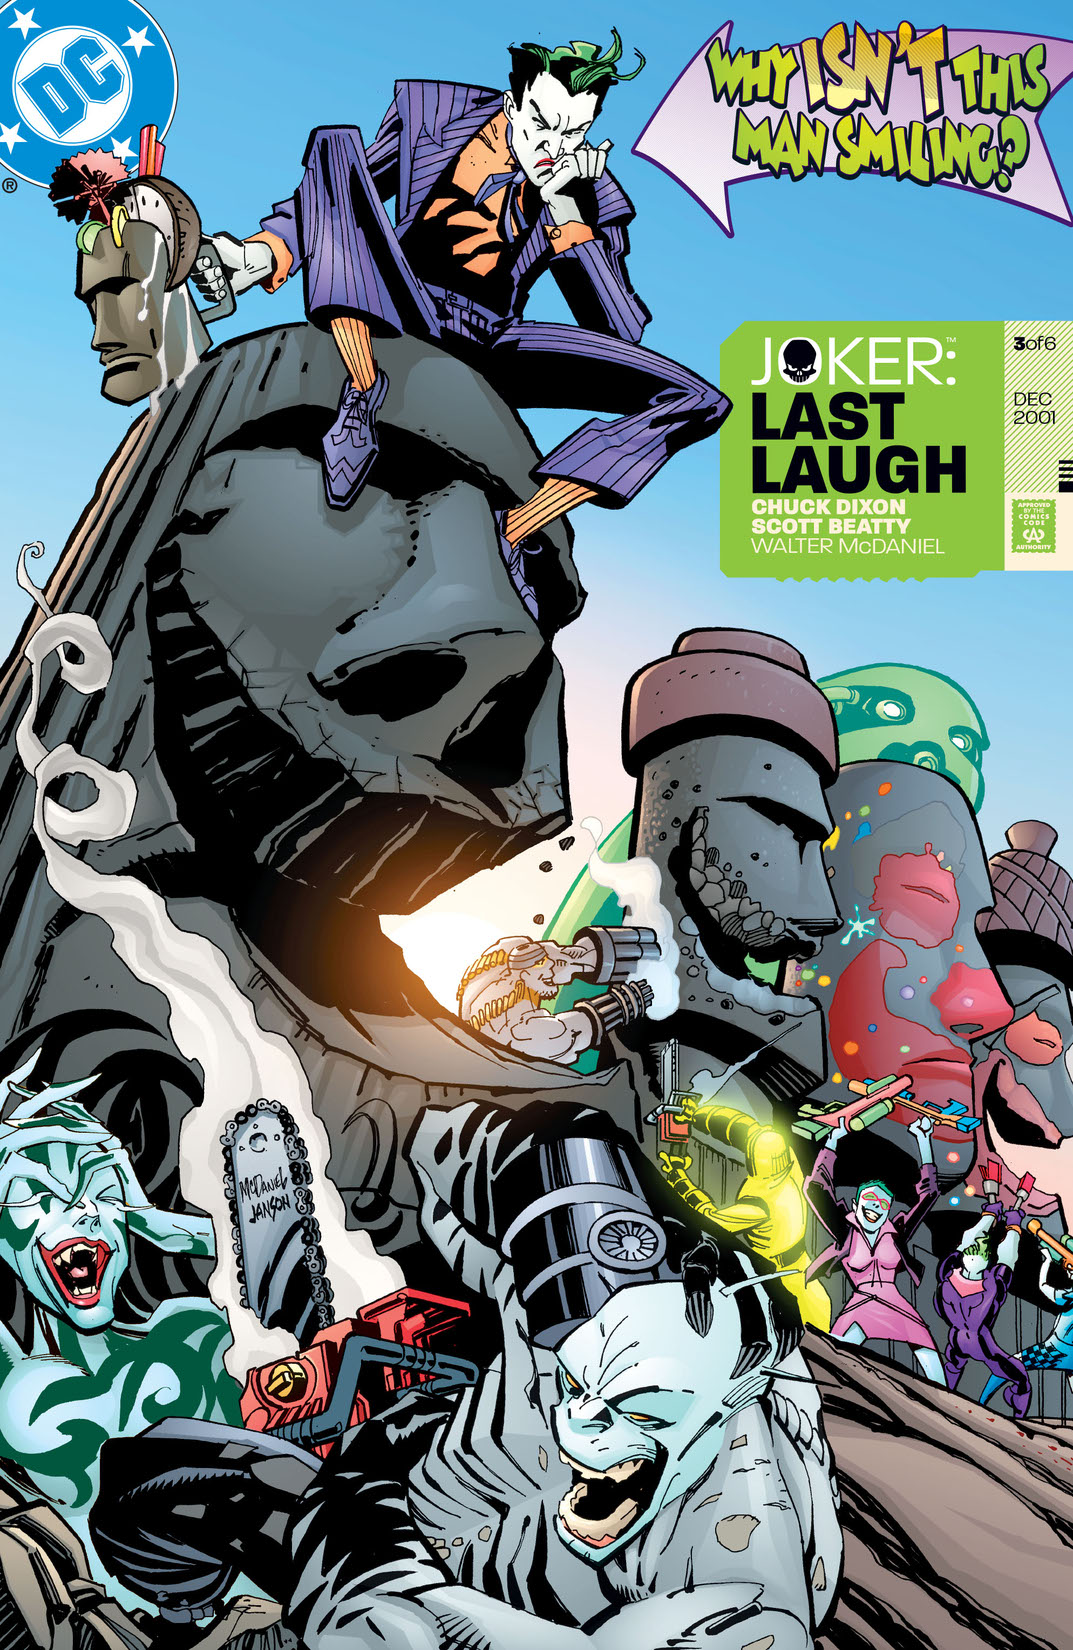 Joker: Last Laugh #3 preview images